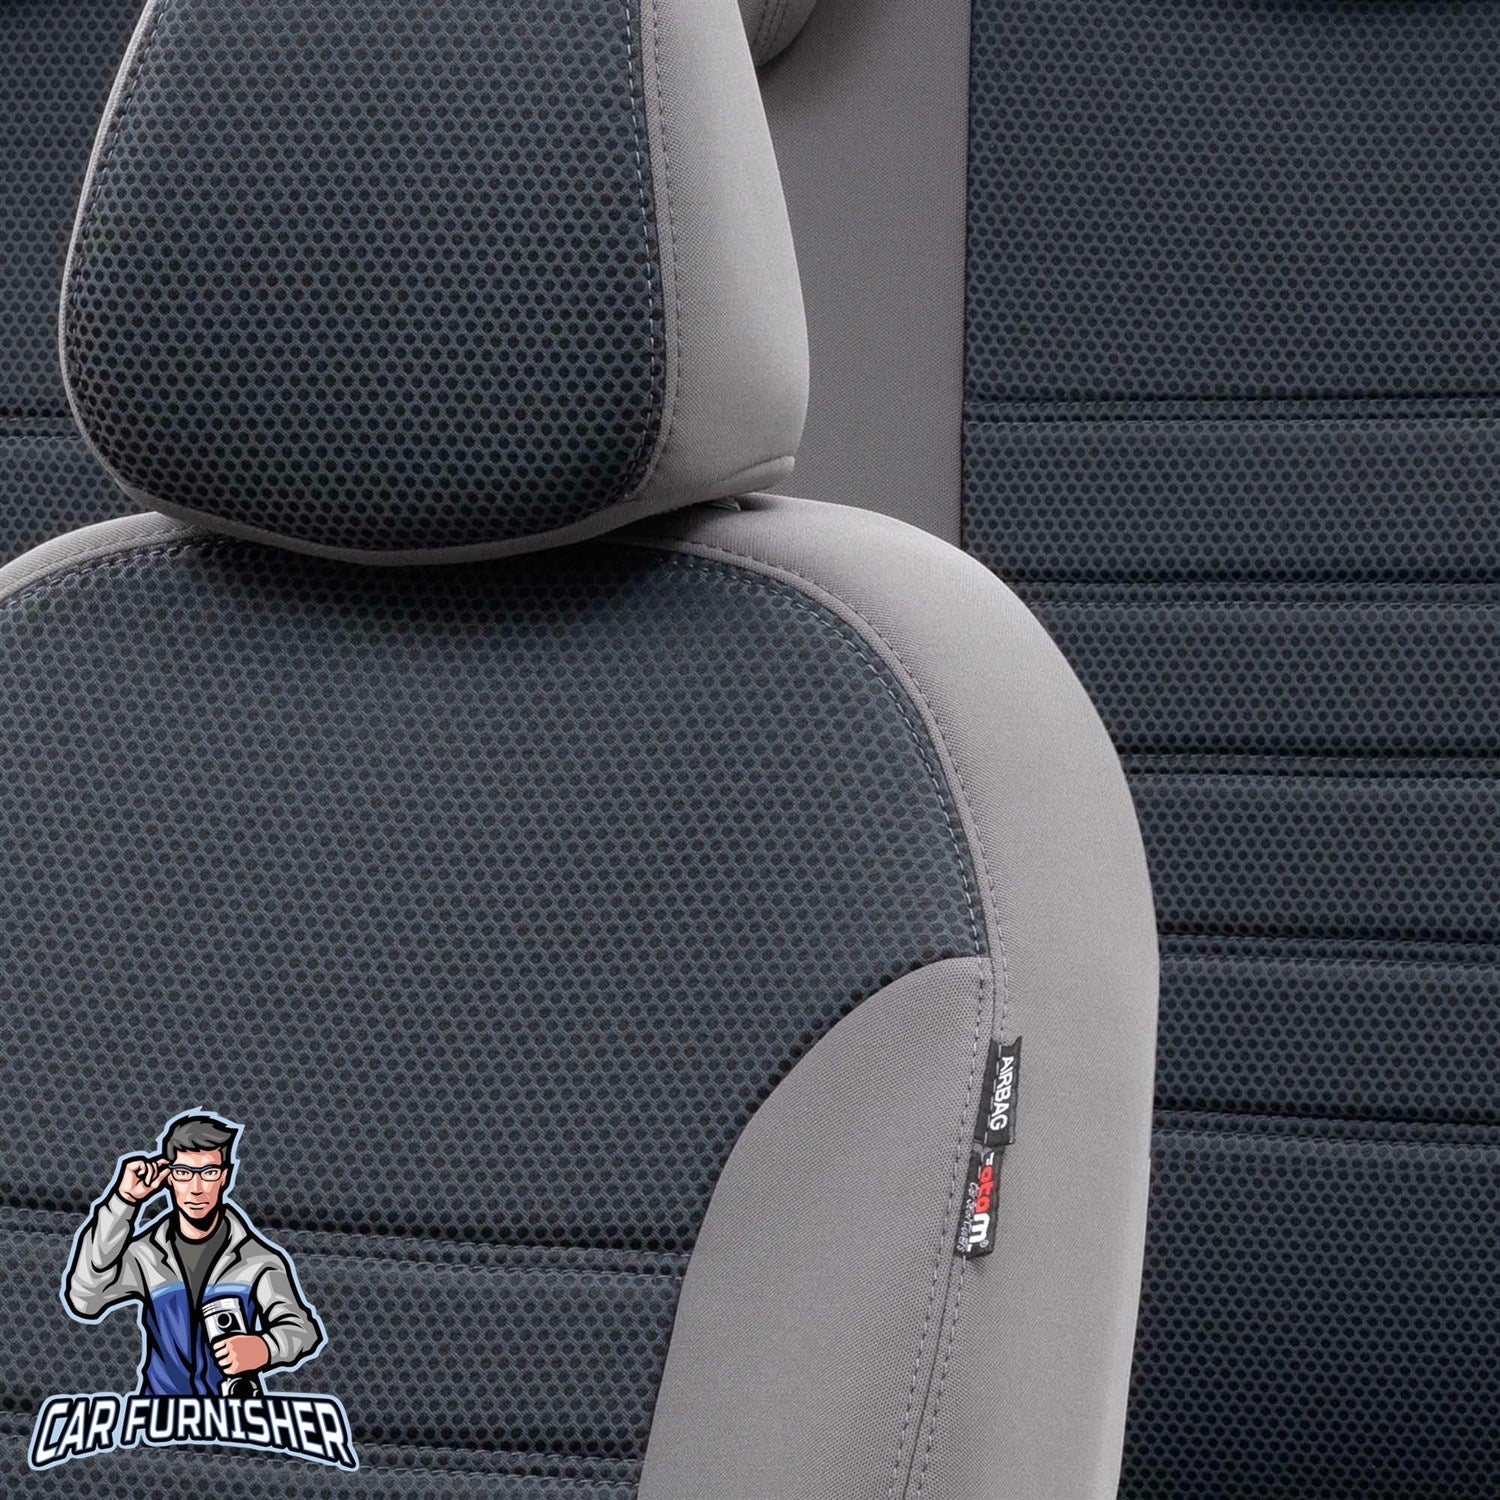 Seat Ateca Seat Covers Original Jacquard Design Smoked Jacquard Fabric